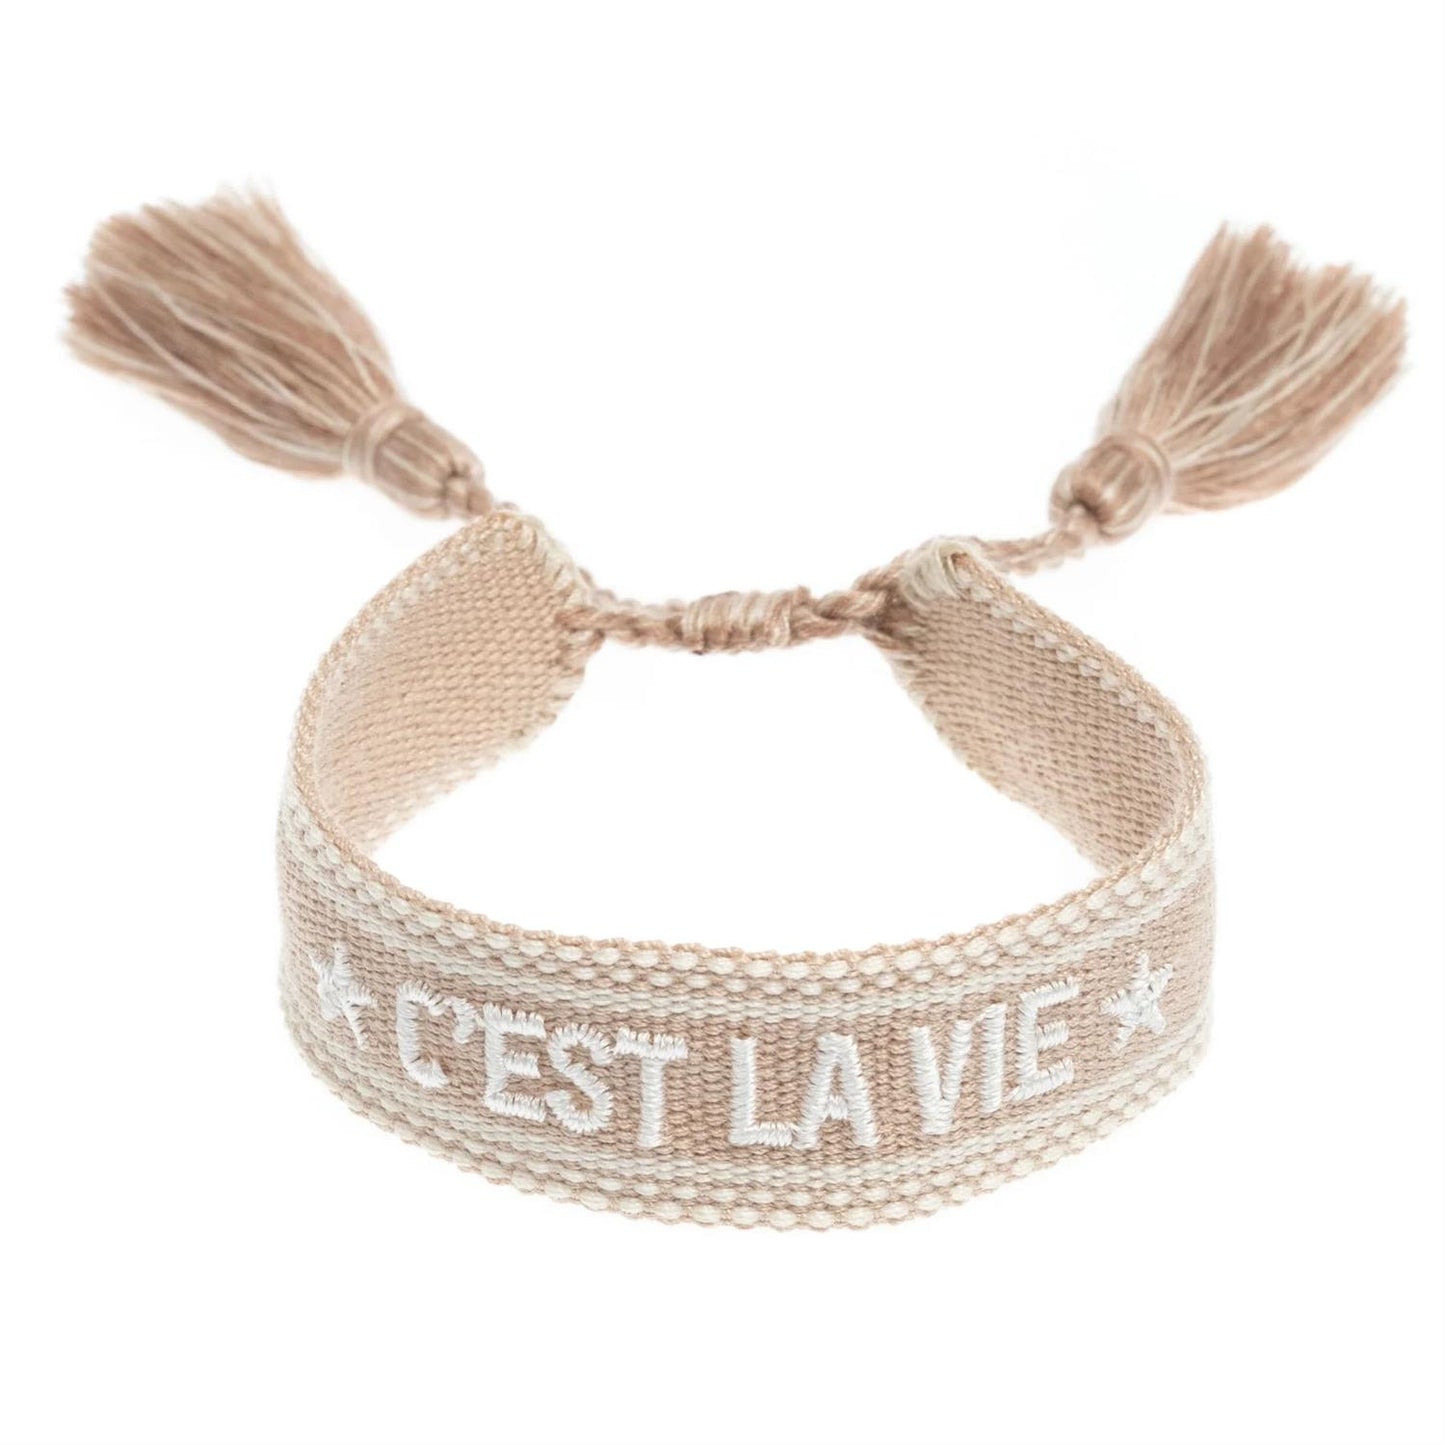 Woven Friendship Bracelet "C'est La Vie" Sand